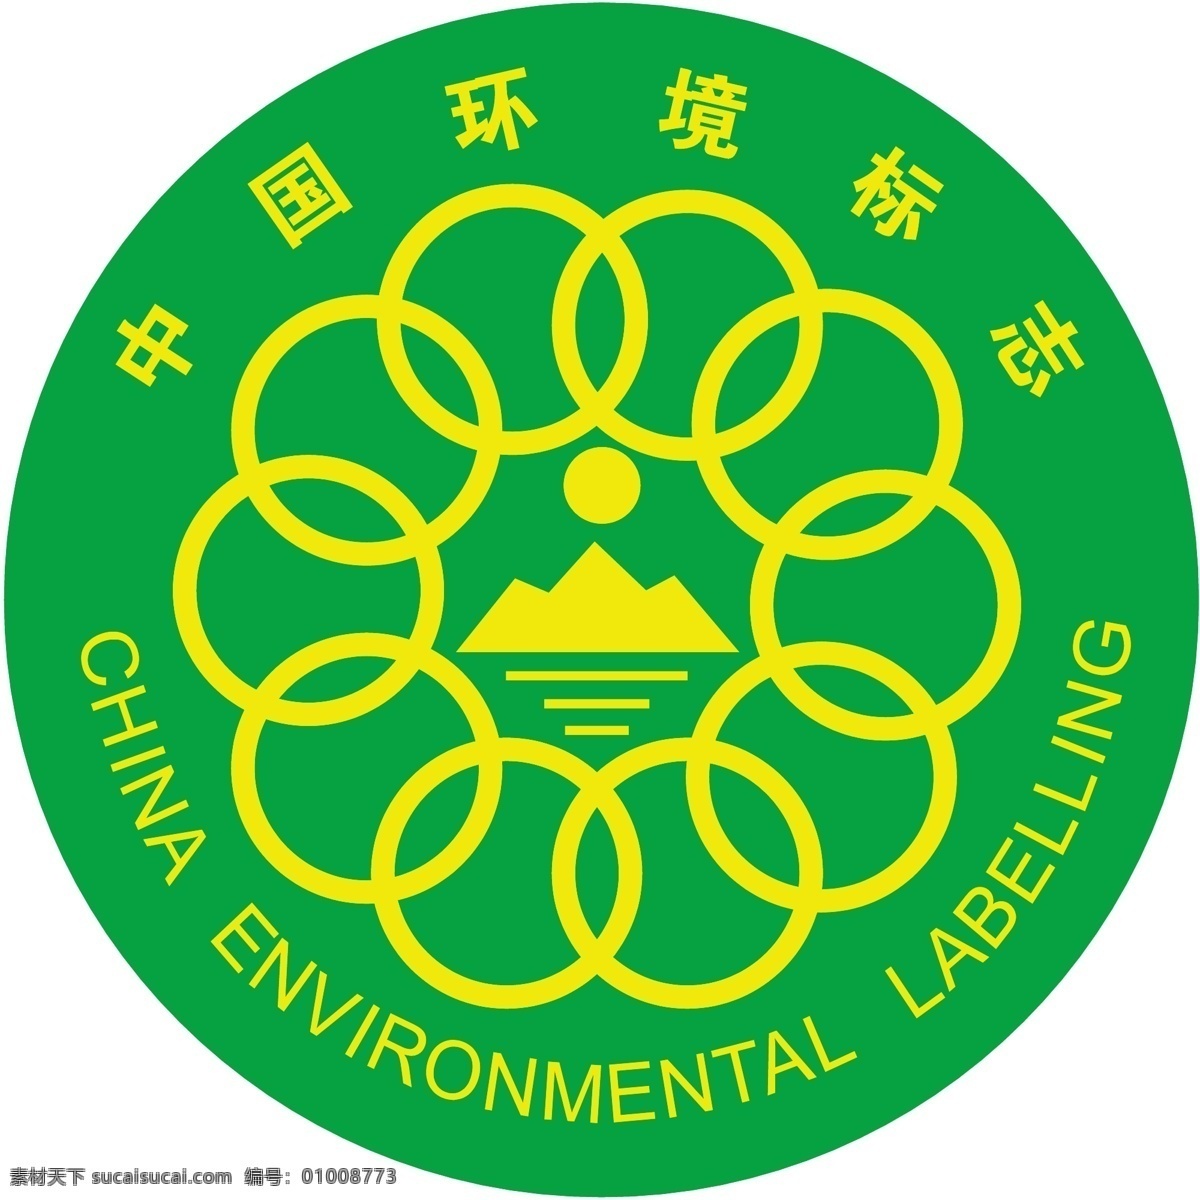 中国环境标志 环境 中国环境 环境标志 矢量 公共标识 标识 标志图标 公共标识标志